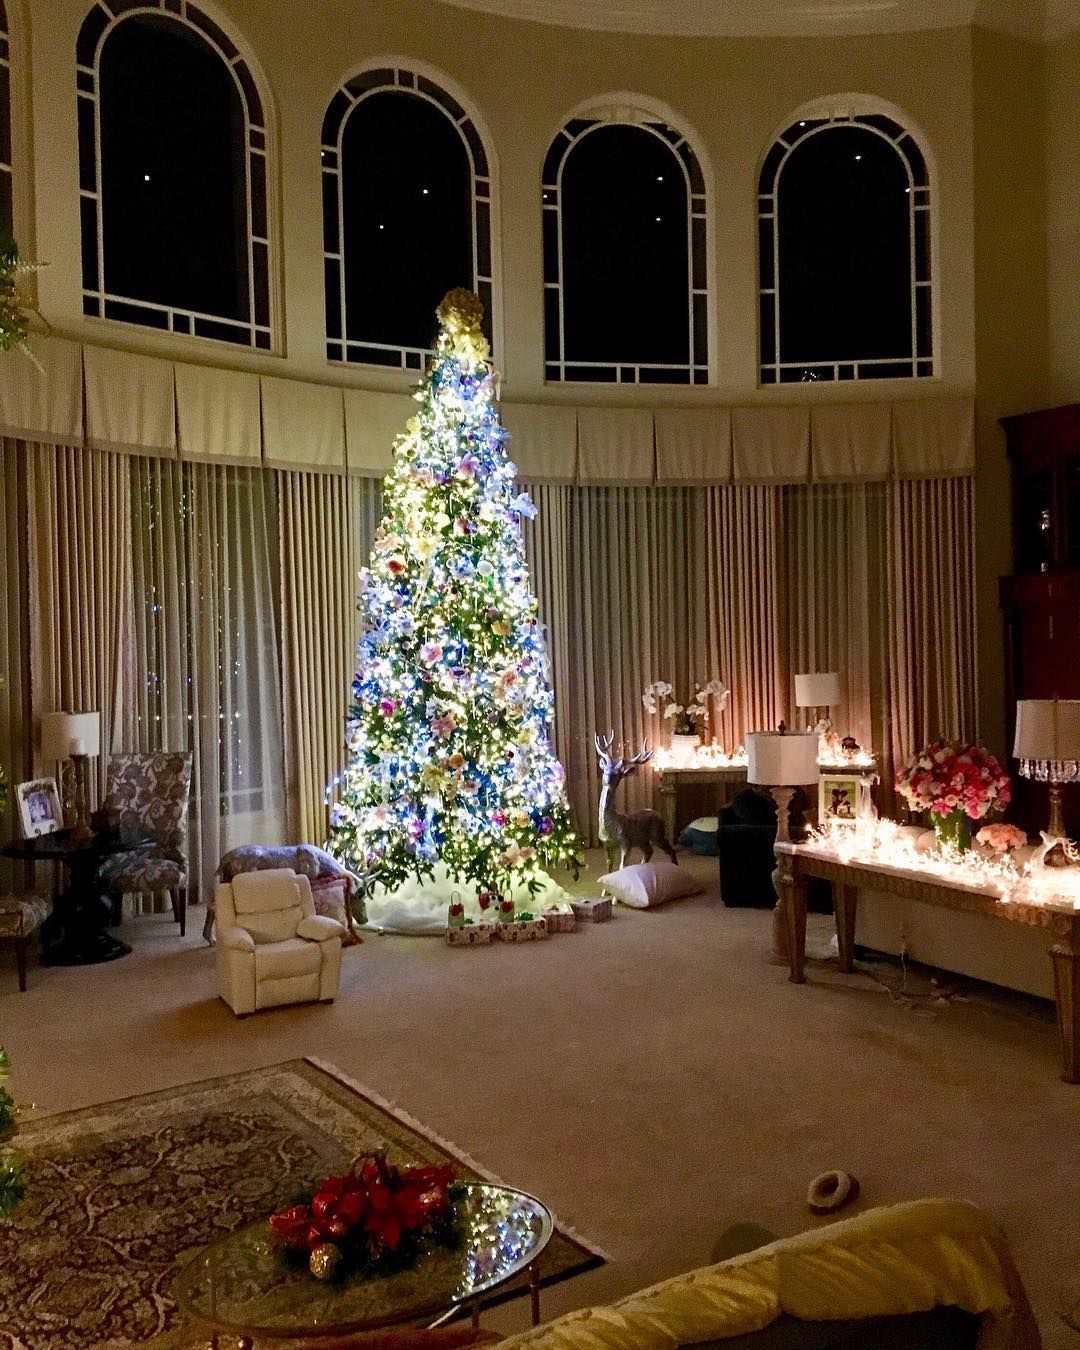 Dekorasi Natal berupa tumpukan salju yang ada di bawah pohon